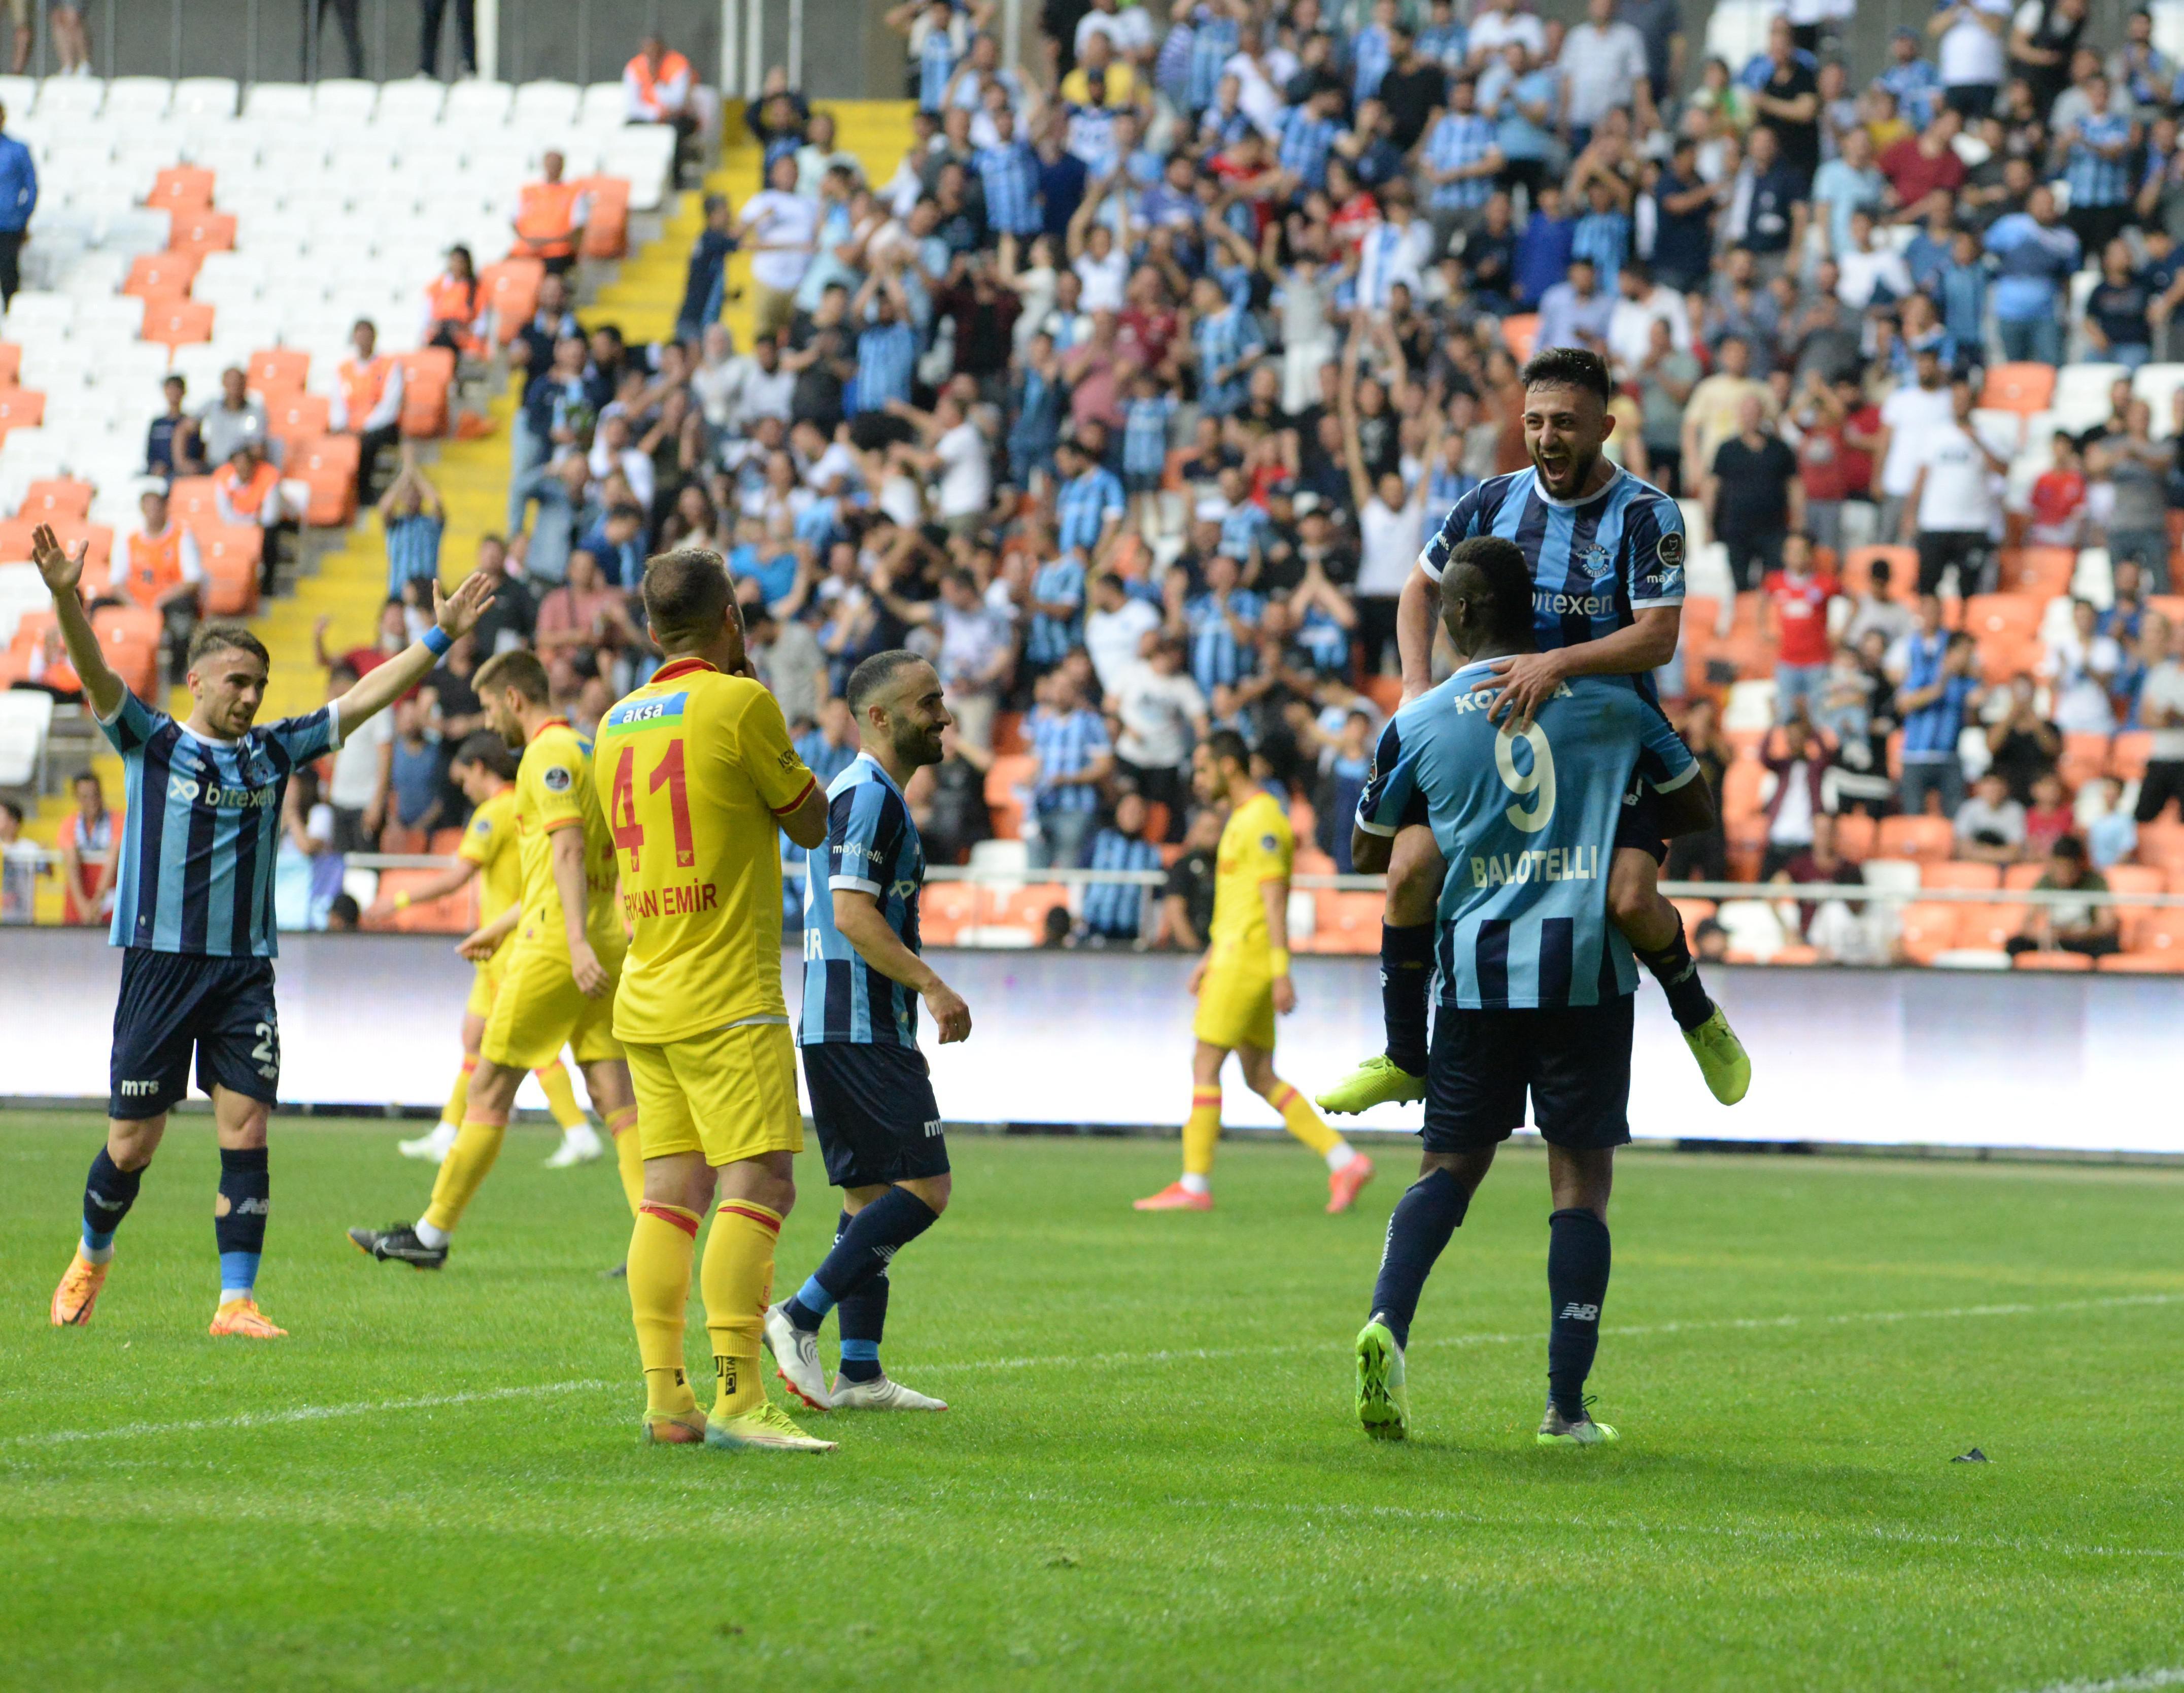 (ÖZET) Adana Demirspor-Göztepe maç sonucu: 7-0